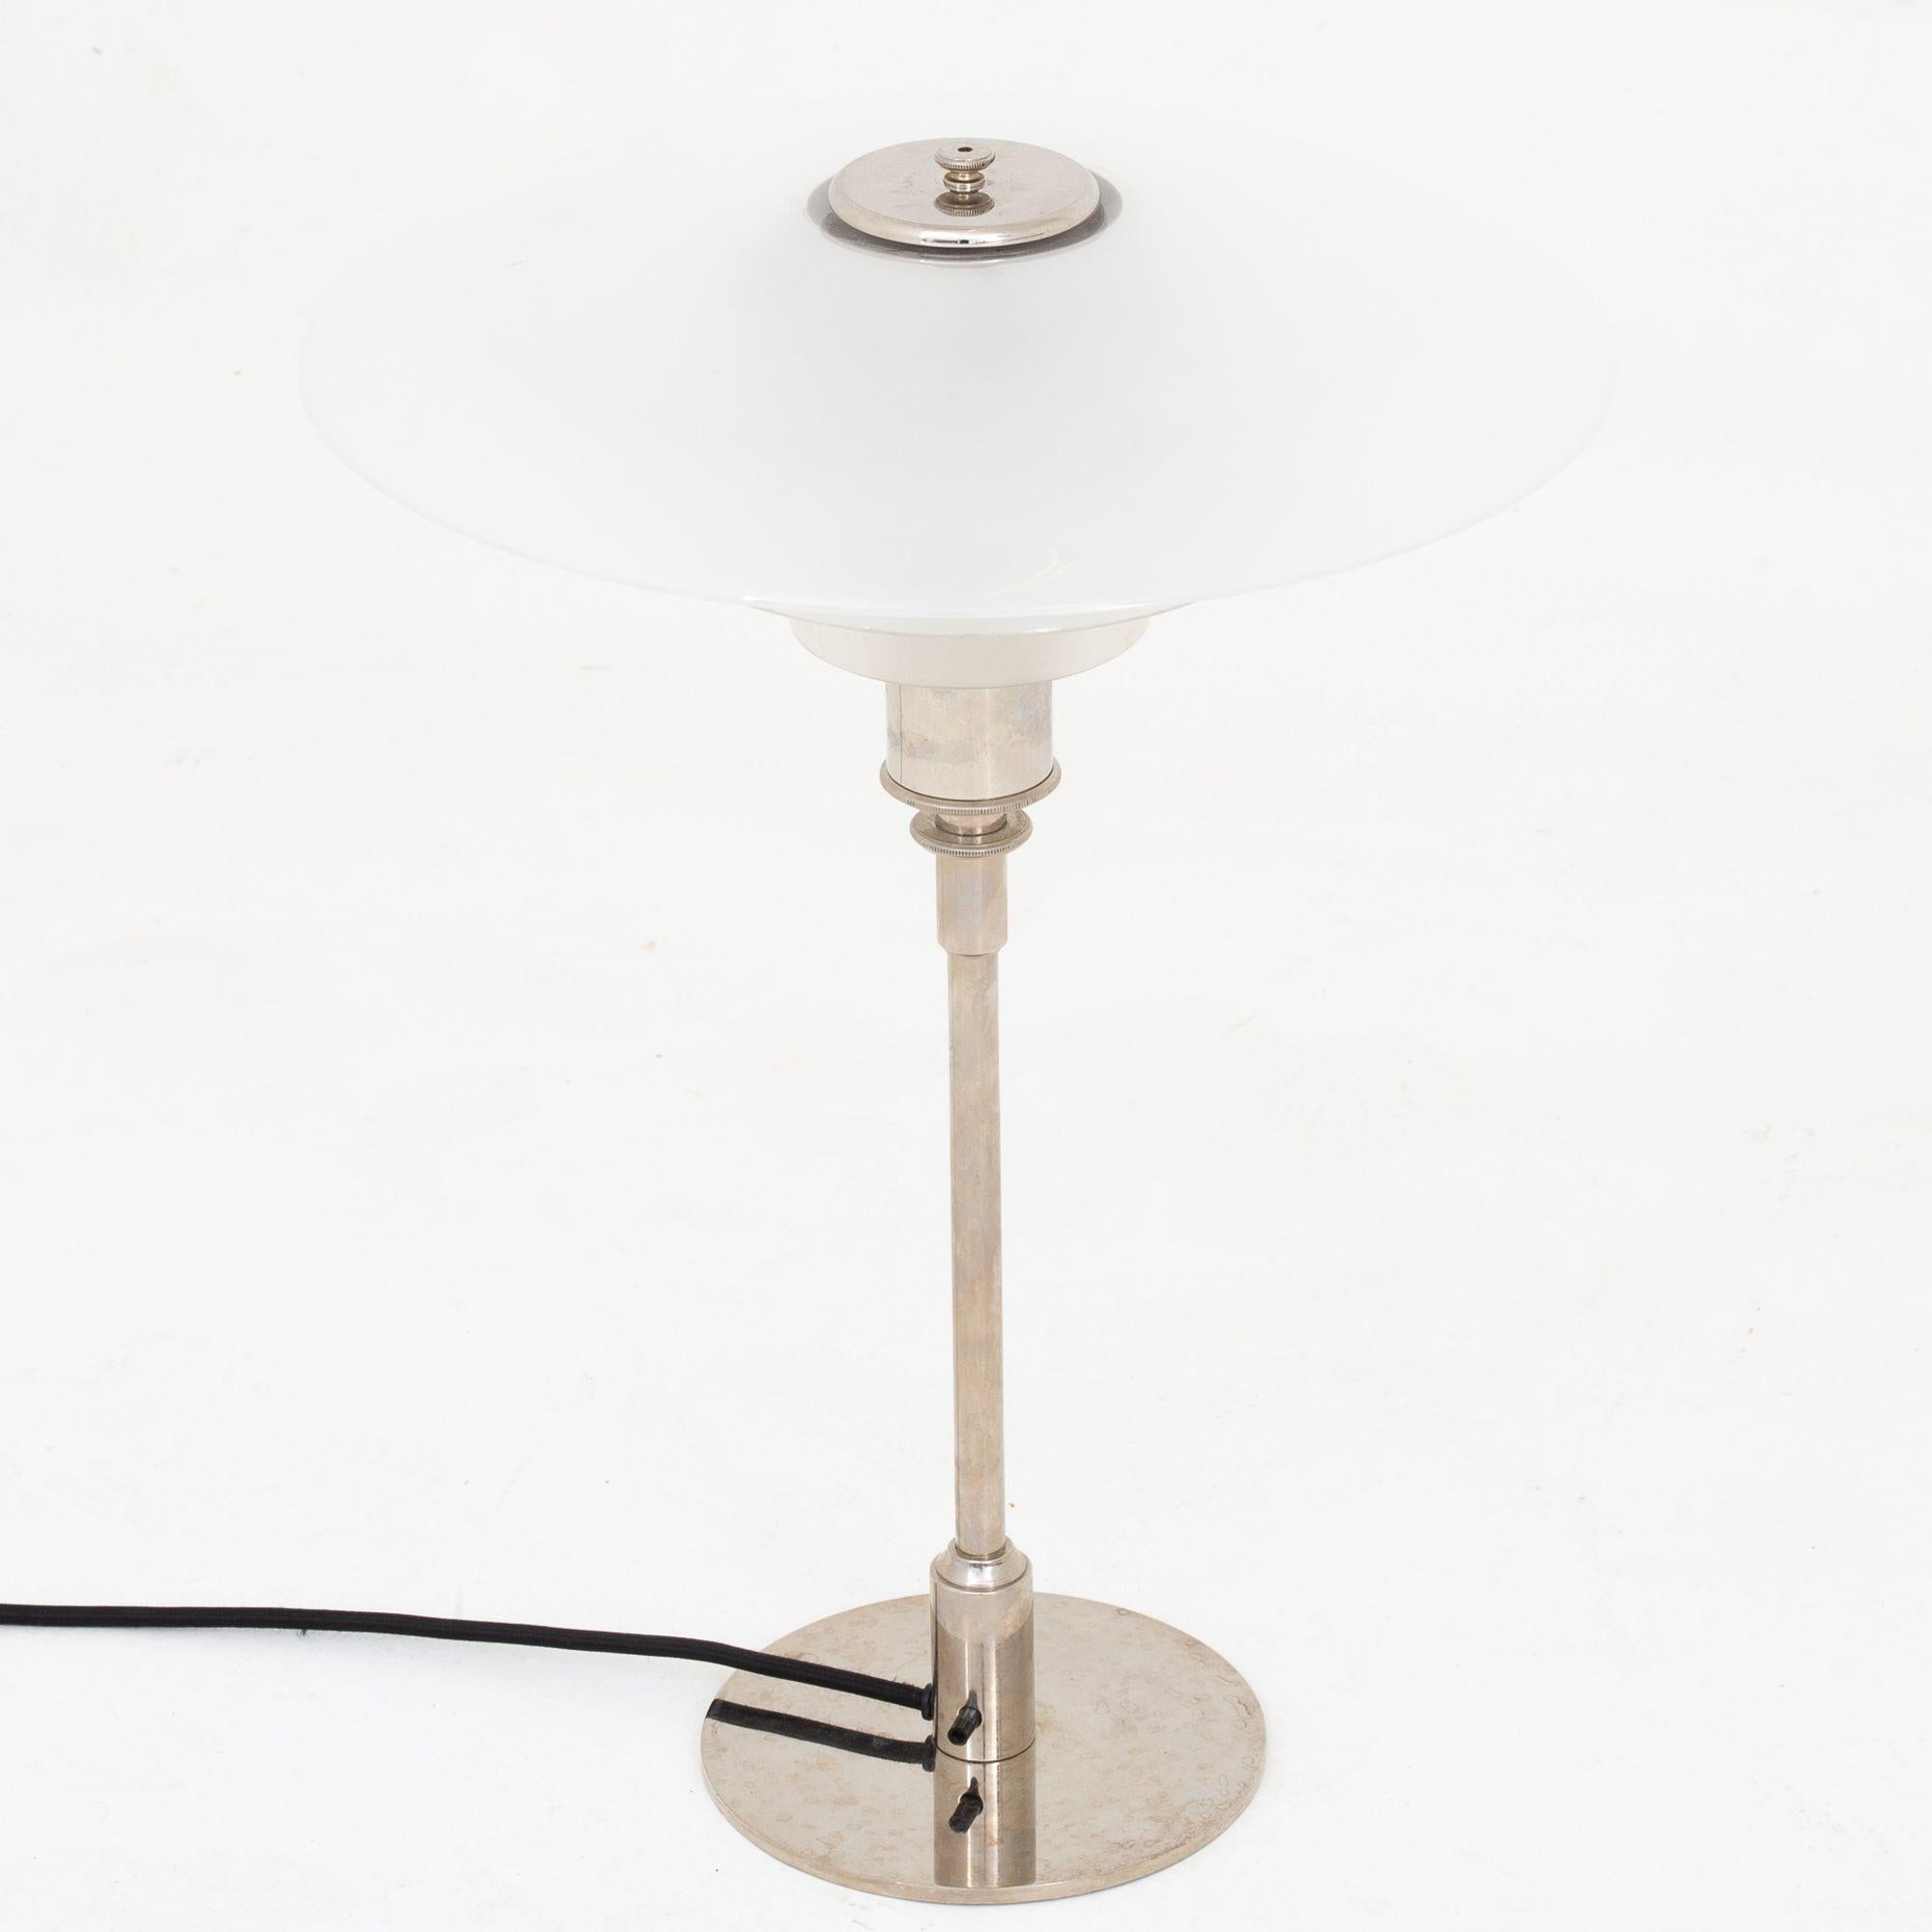 PH 4/3 - lampe de table avec abat-jour en verre mat et acier nickelé. Poul Henningsen / Louis Poulsen.